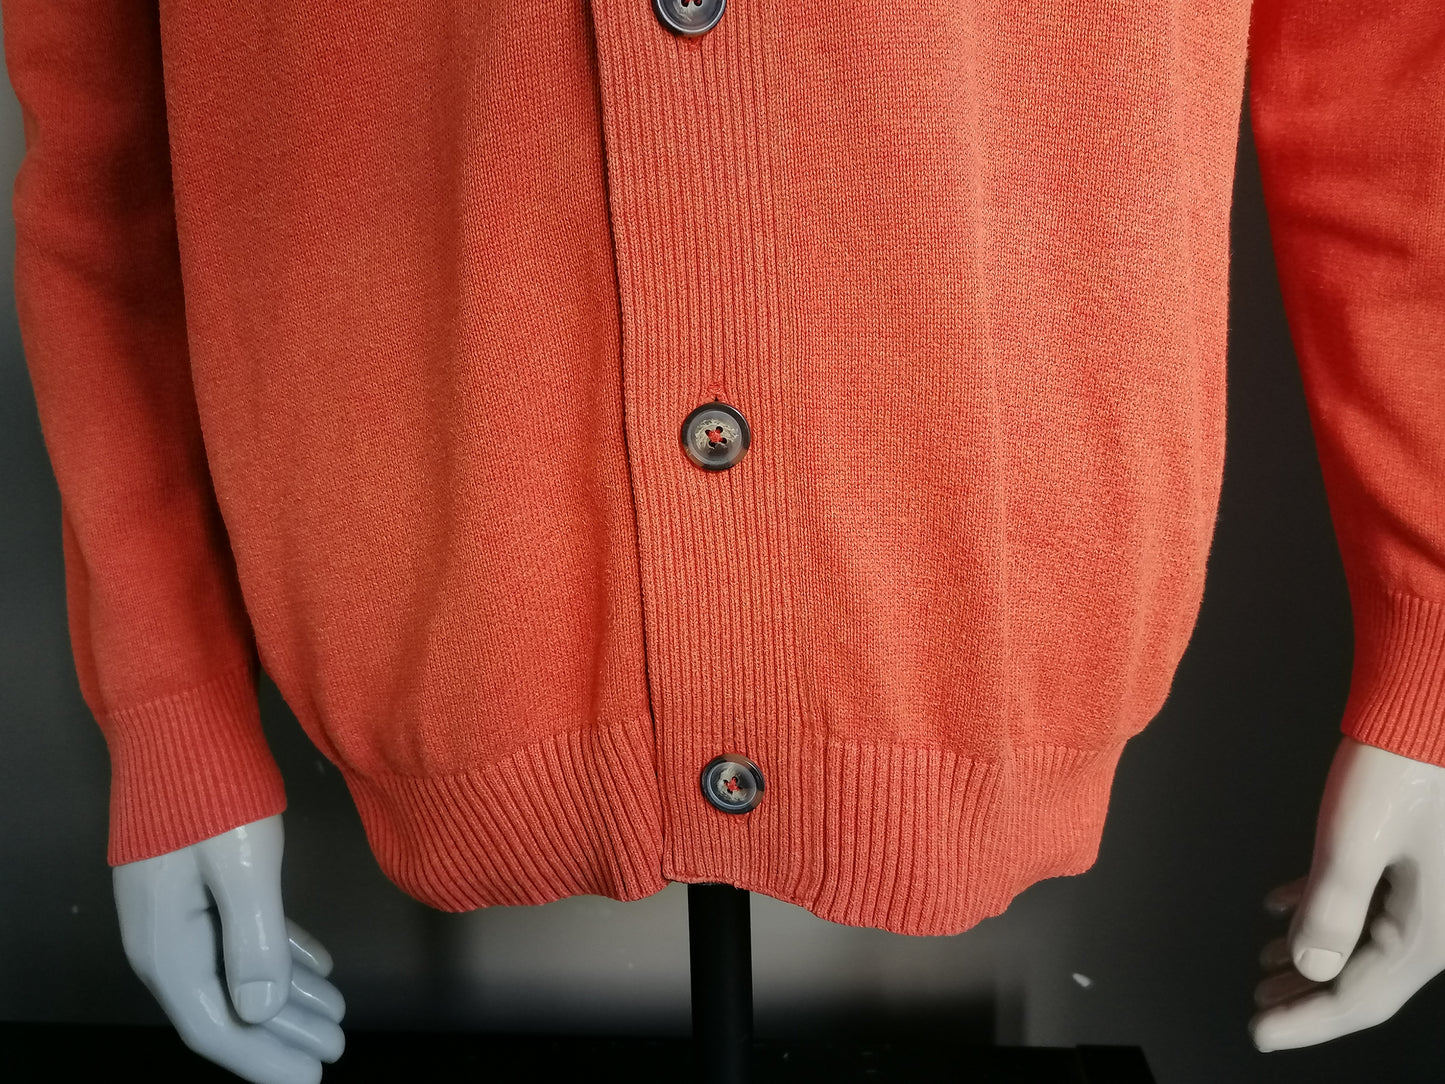 Casa Moda cardigan with buttons. Orange mixed size XXXL / 3XL.